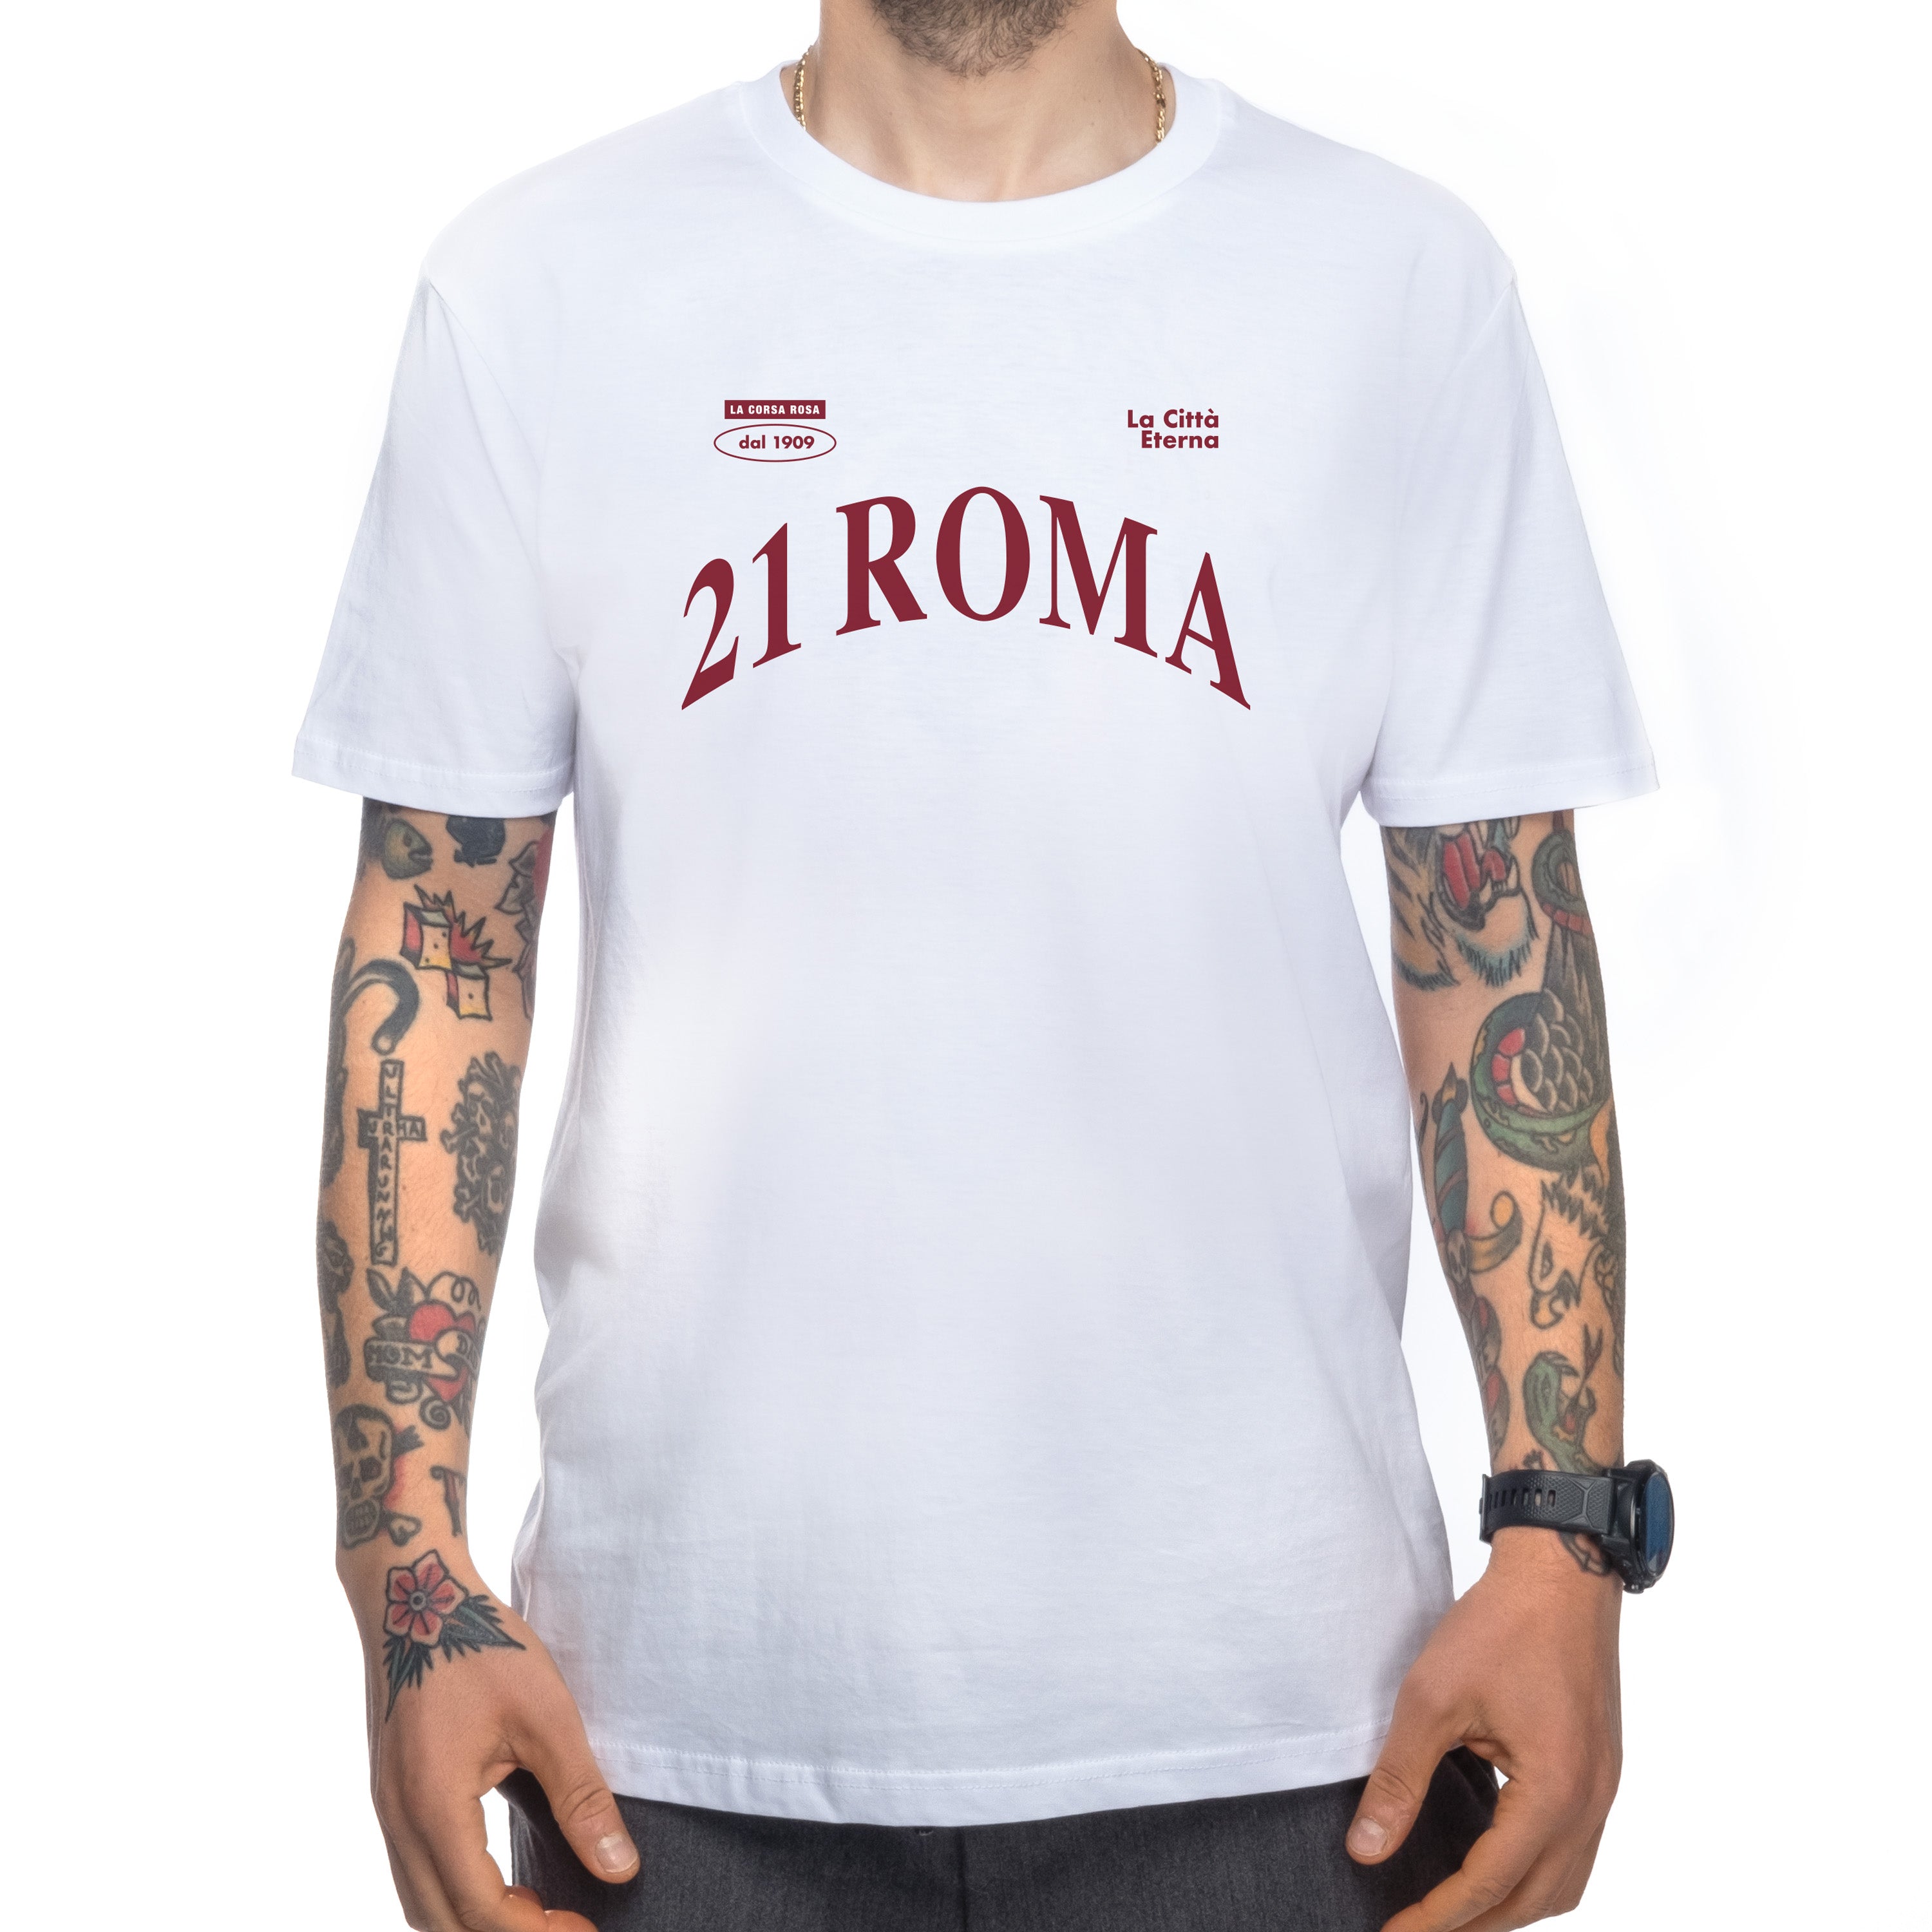 Roma Caput Mundi T-Shirt Giro d'Italia